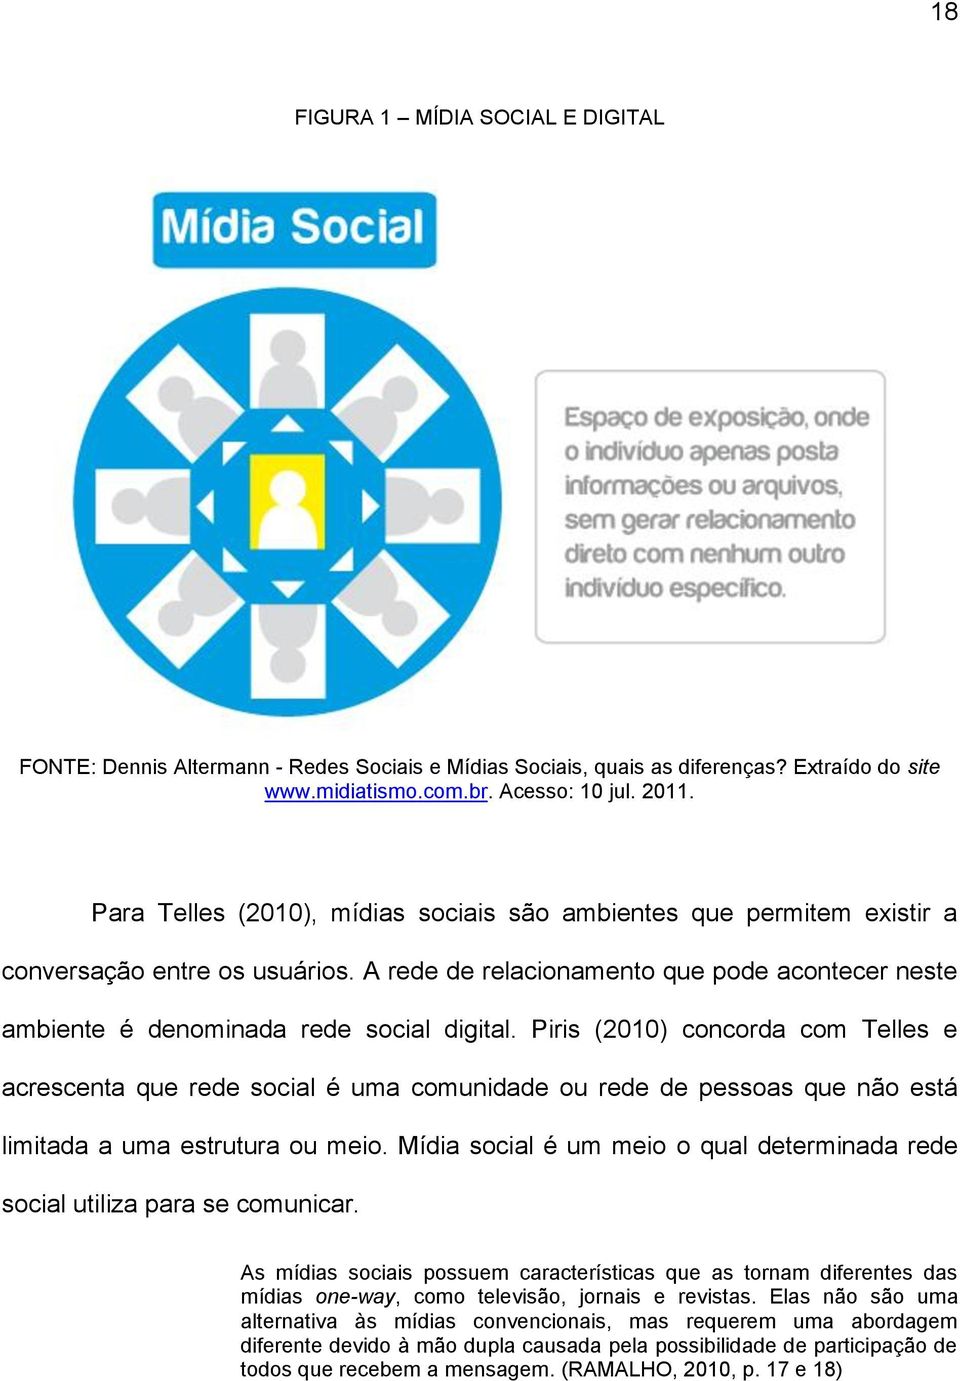 Piris (2010) concorda com Telles e acrescenta que rede social é uma comunidade ou rede de pessoas que não está limitada a uma estrutura ou meio.